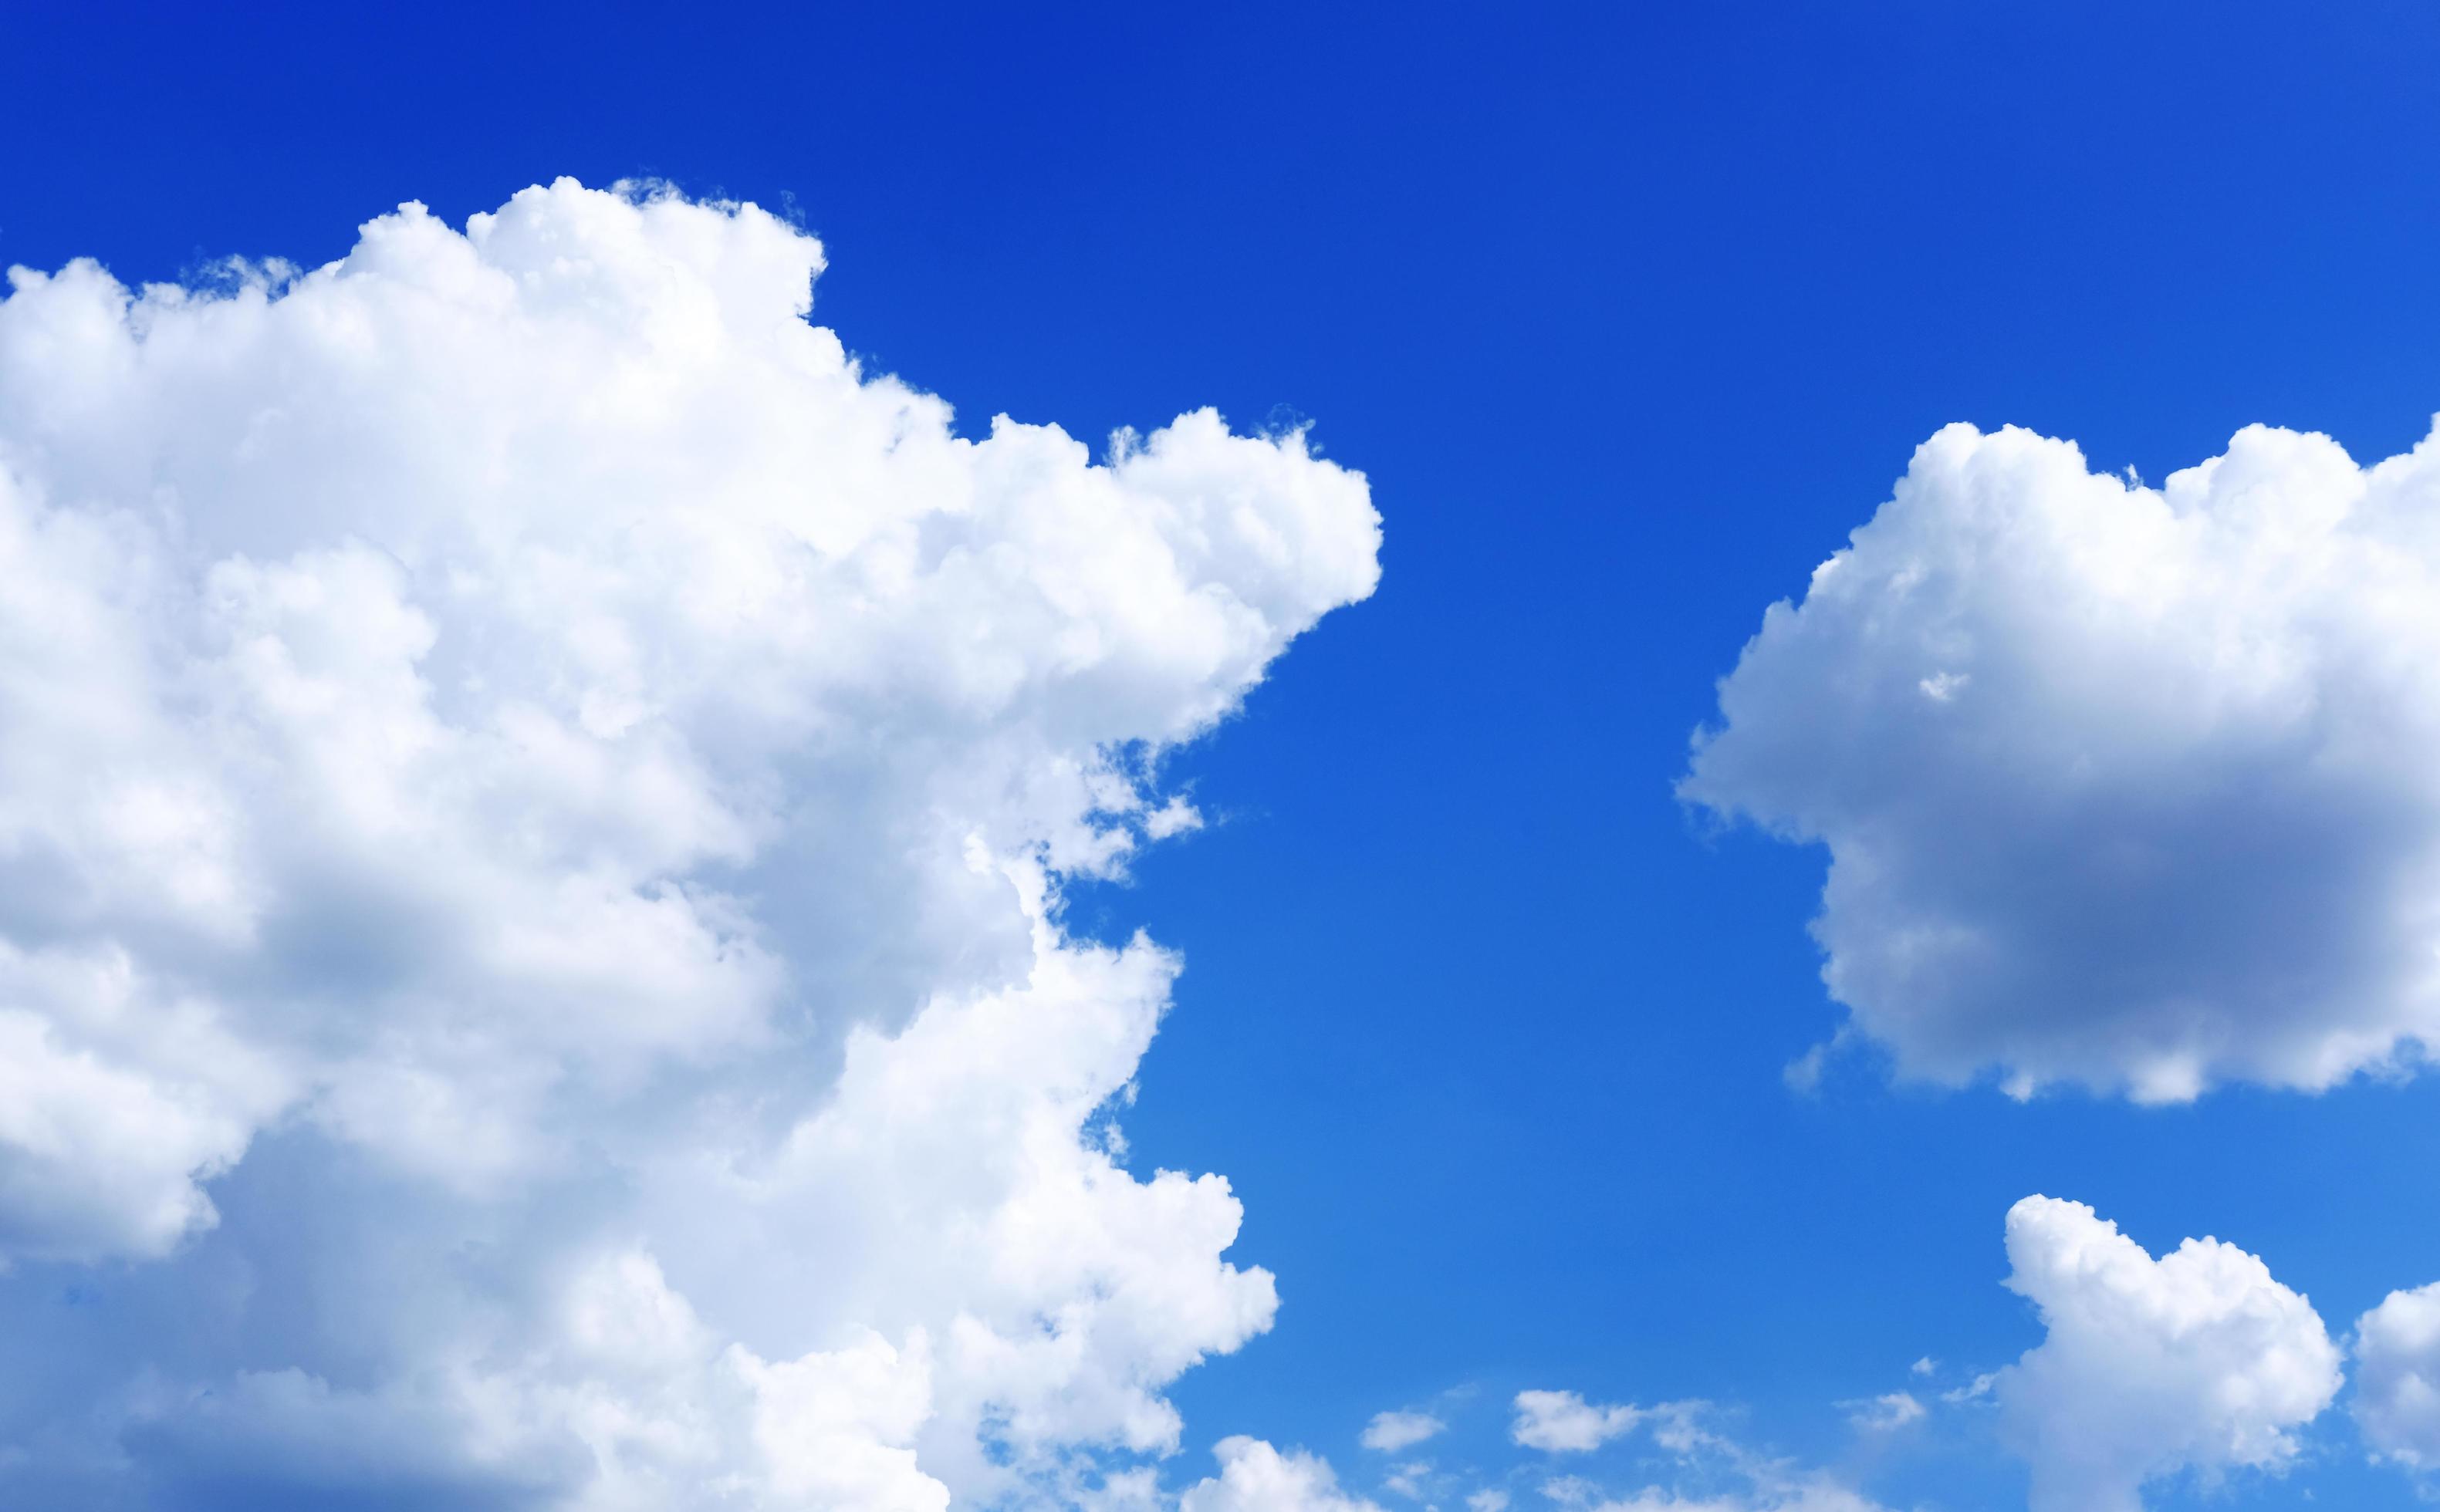 Hình nền mây là điều tuyệt vời để trang trí máy tính của bạn. Cùng chiêm ngưỡng những mảng mây rộng lớn, đồng thời tận hưởng cảm giác bình yên khi nhìn những tia nắng chiếu xuống.